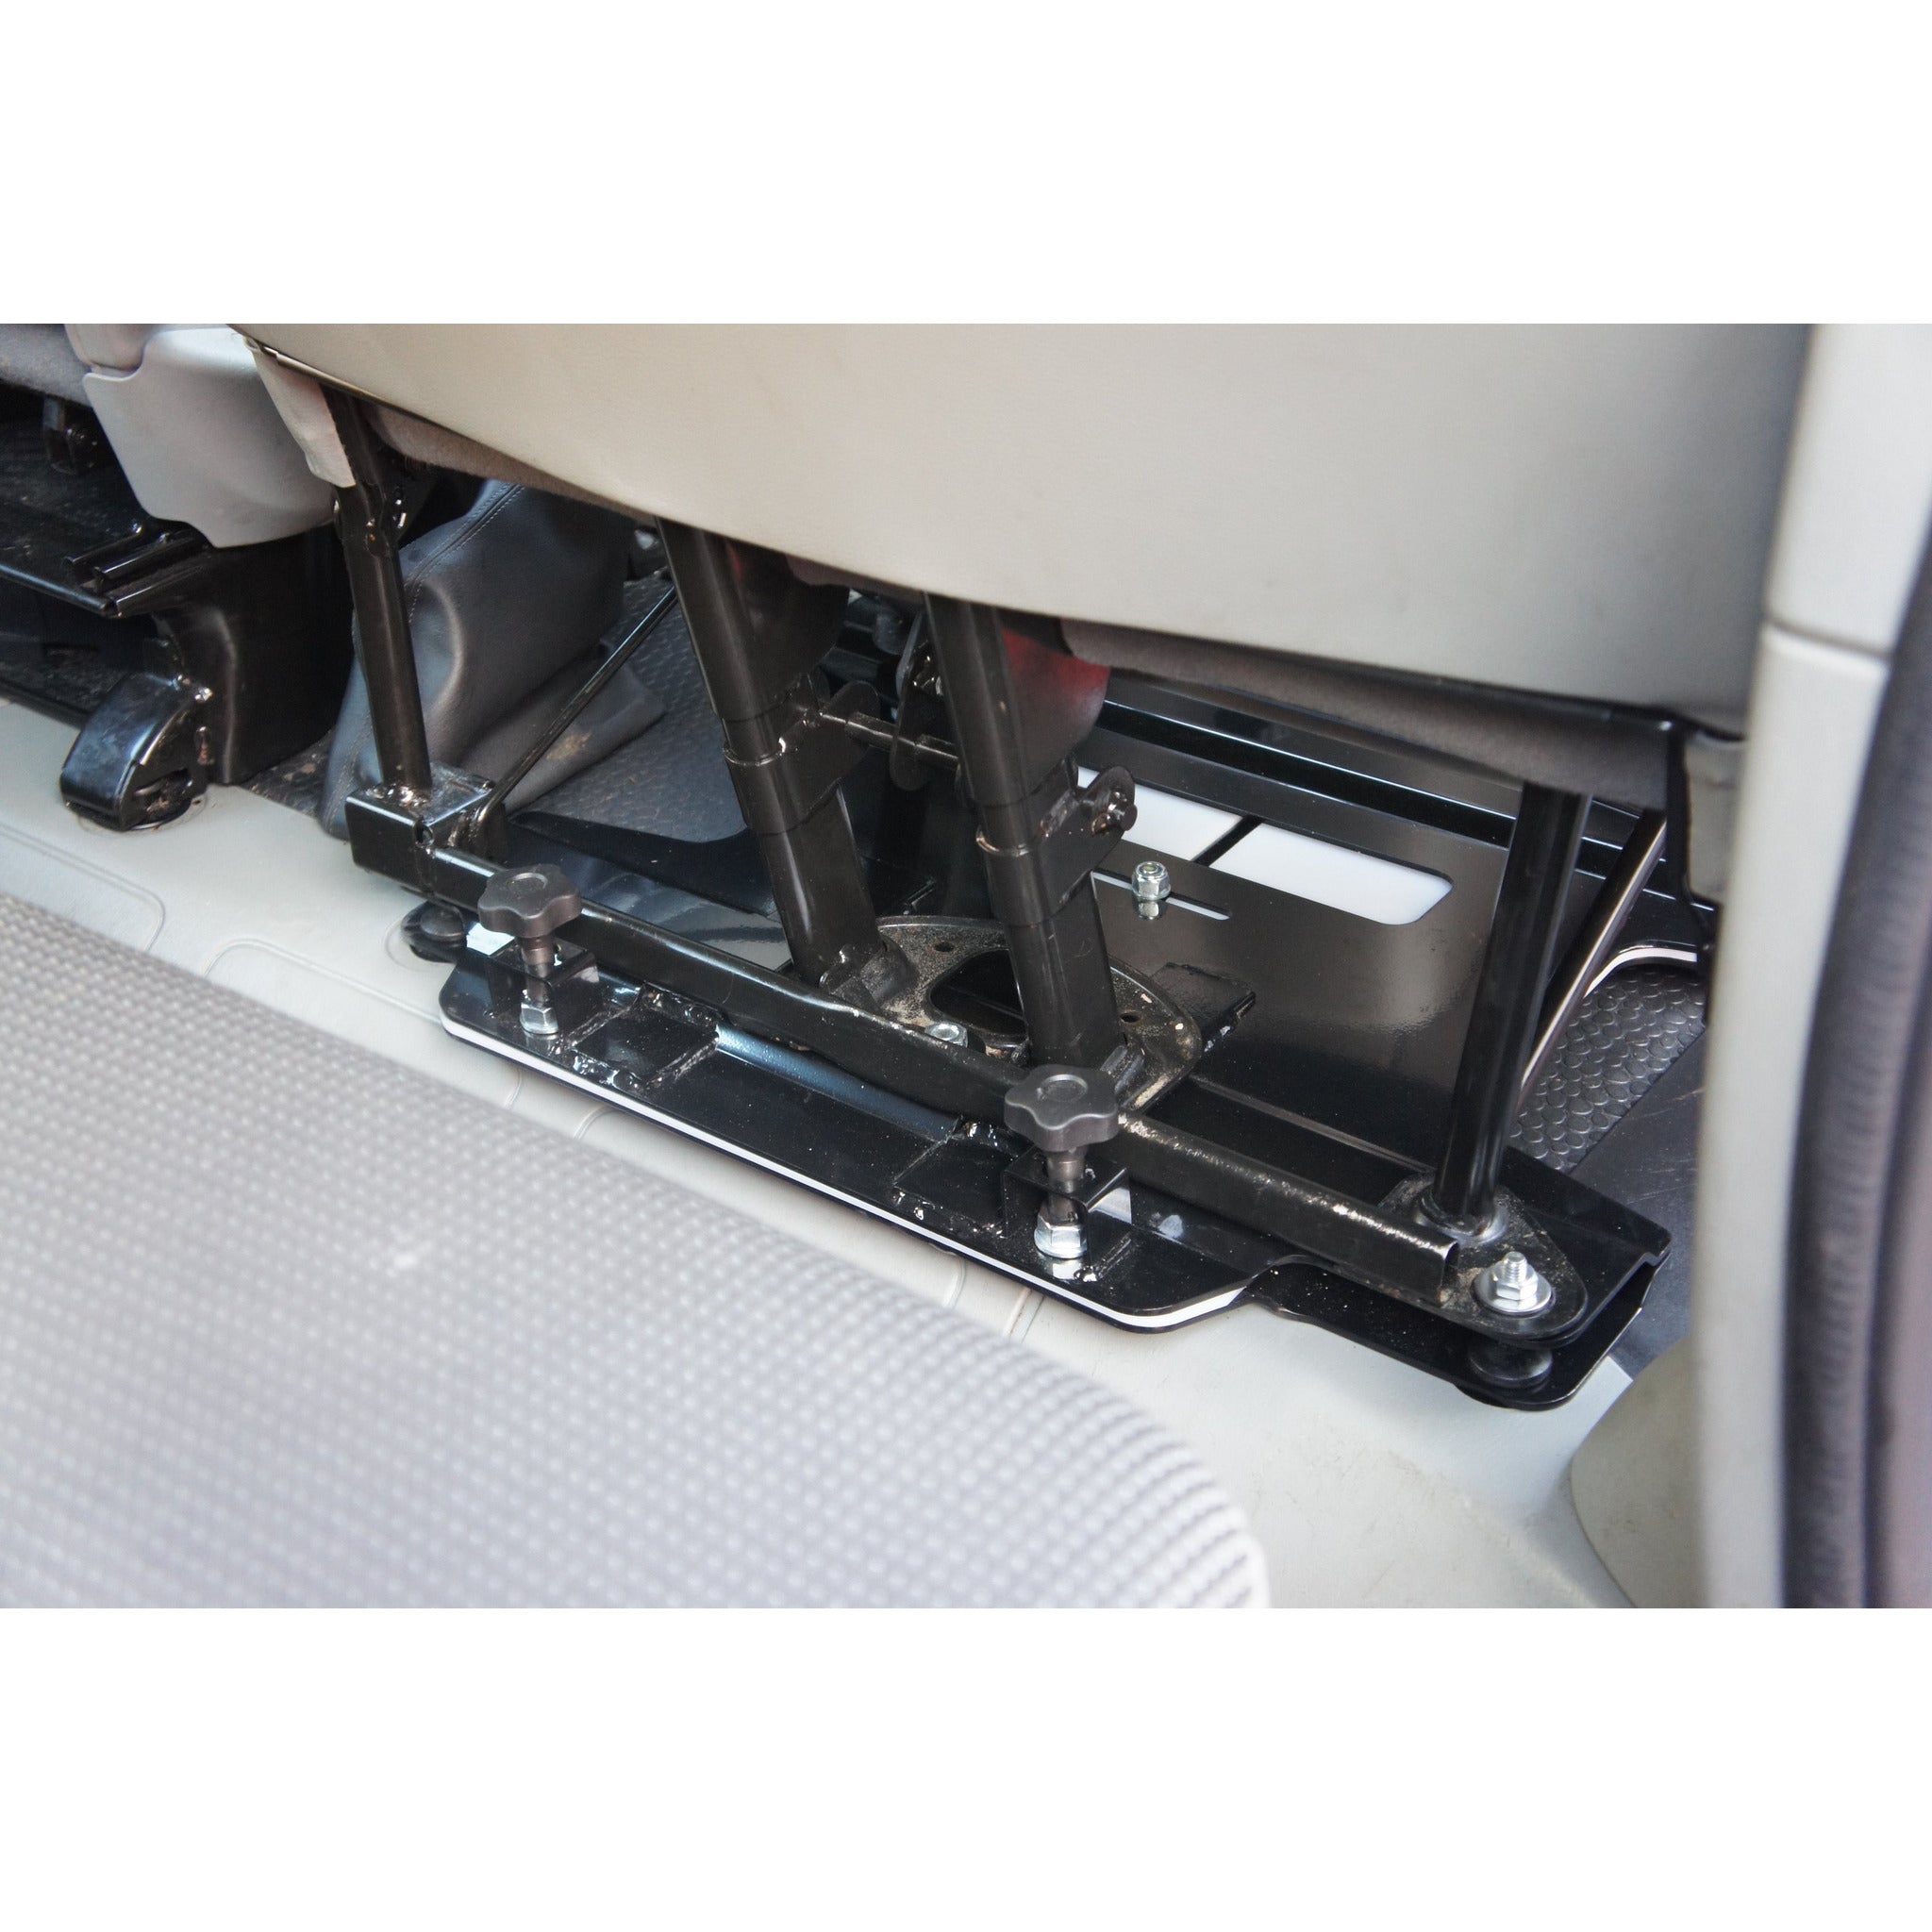 Kiravans X83 Vivaro / Trafic / Primastar 2001-2014 2nd Gen Double Passenger Seat Swivel (Left Hand Drive) Designed by Kiravans 